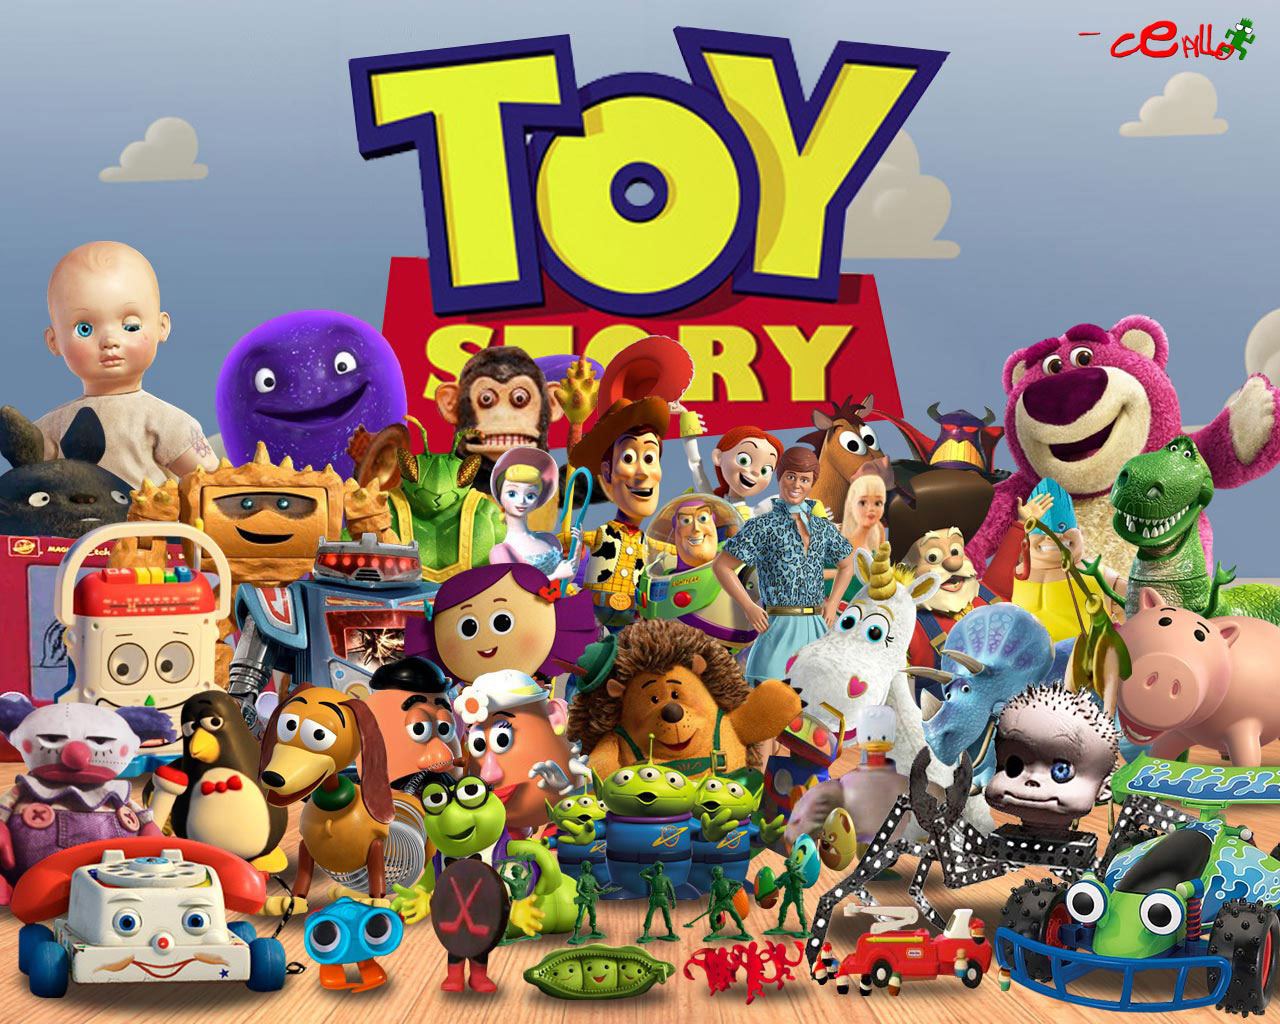 Toy Story Woody Toy Story Buzz Lightyear Hamm Toy Story Lots O Huggin Bear Stinky Pete Zurg Toy Stor 1280x1024